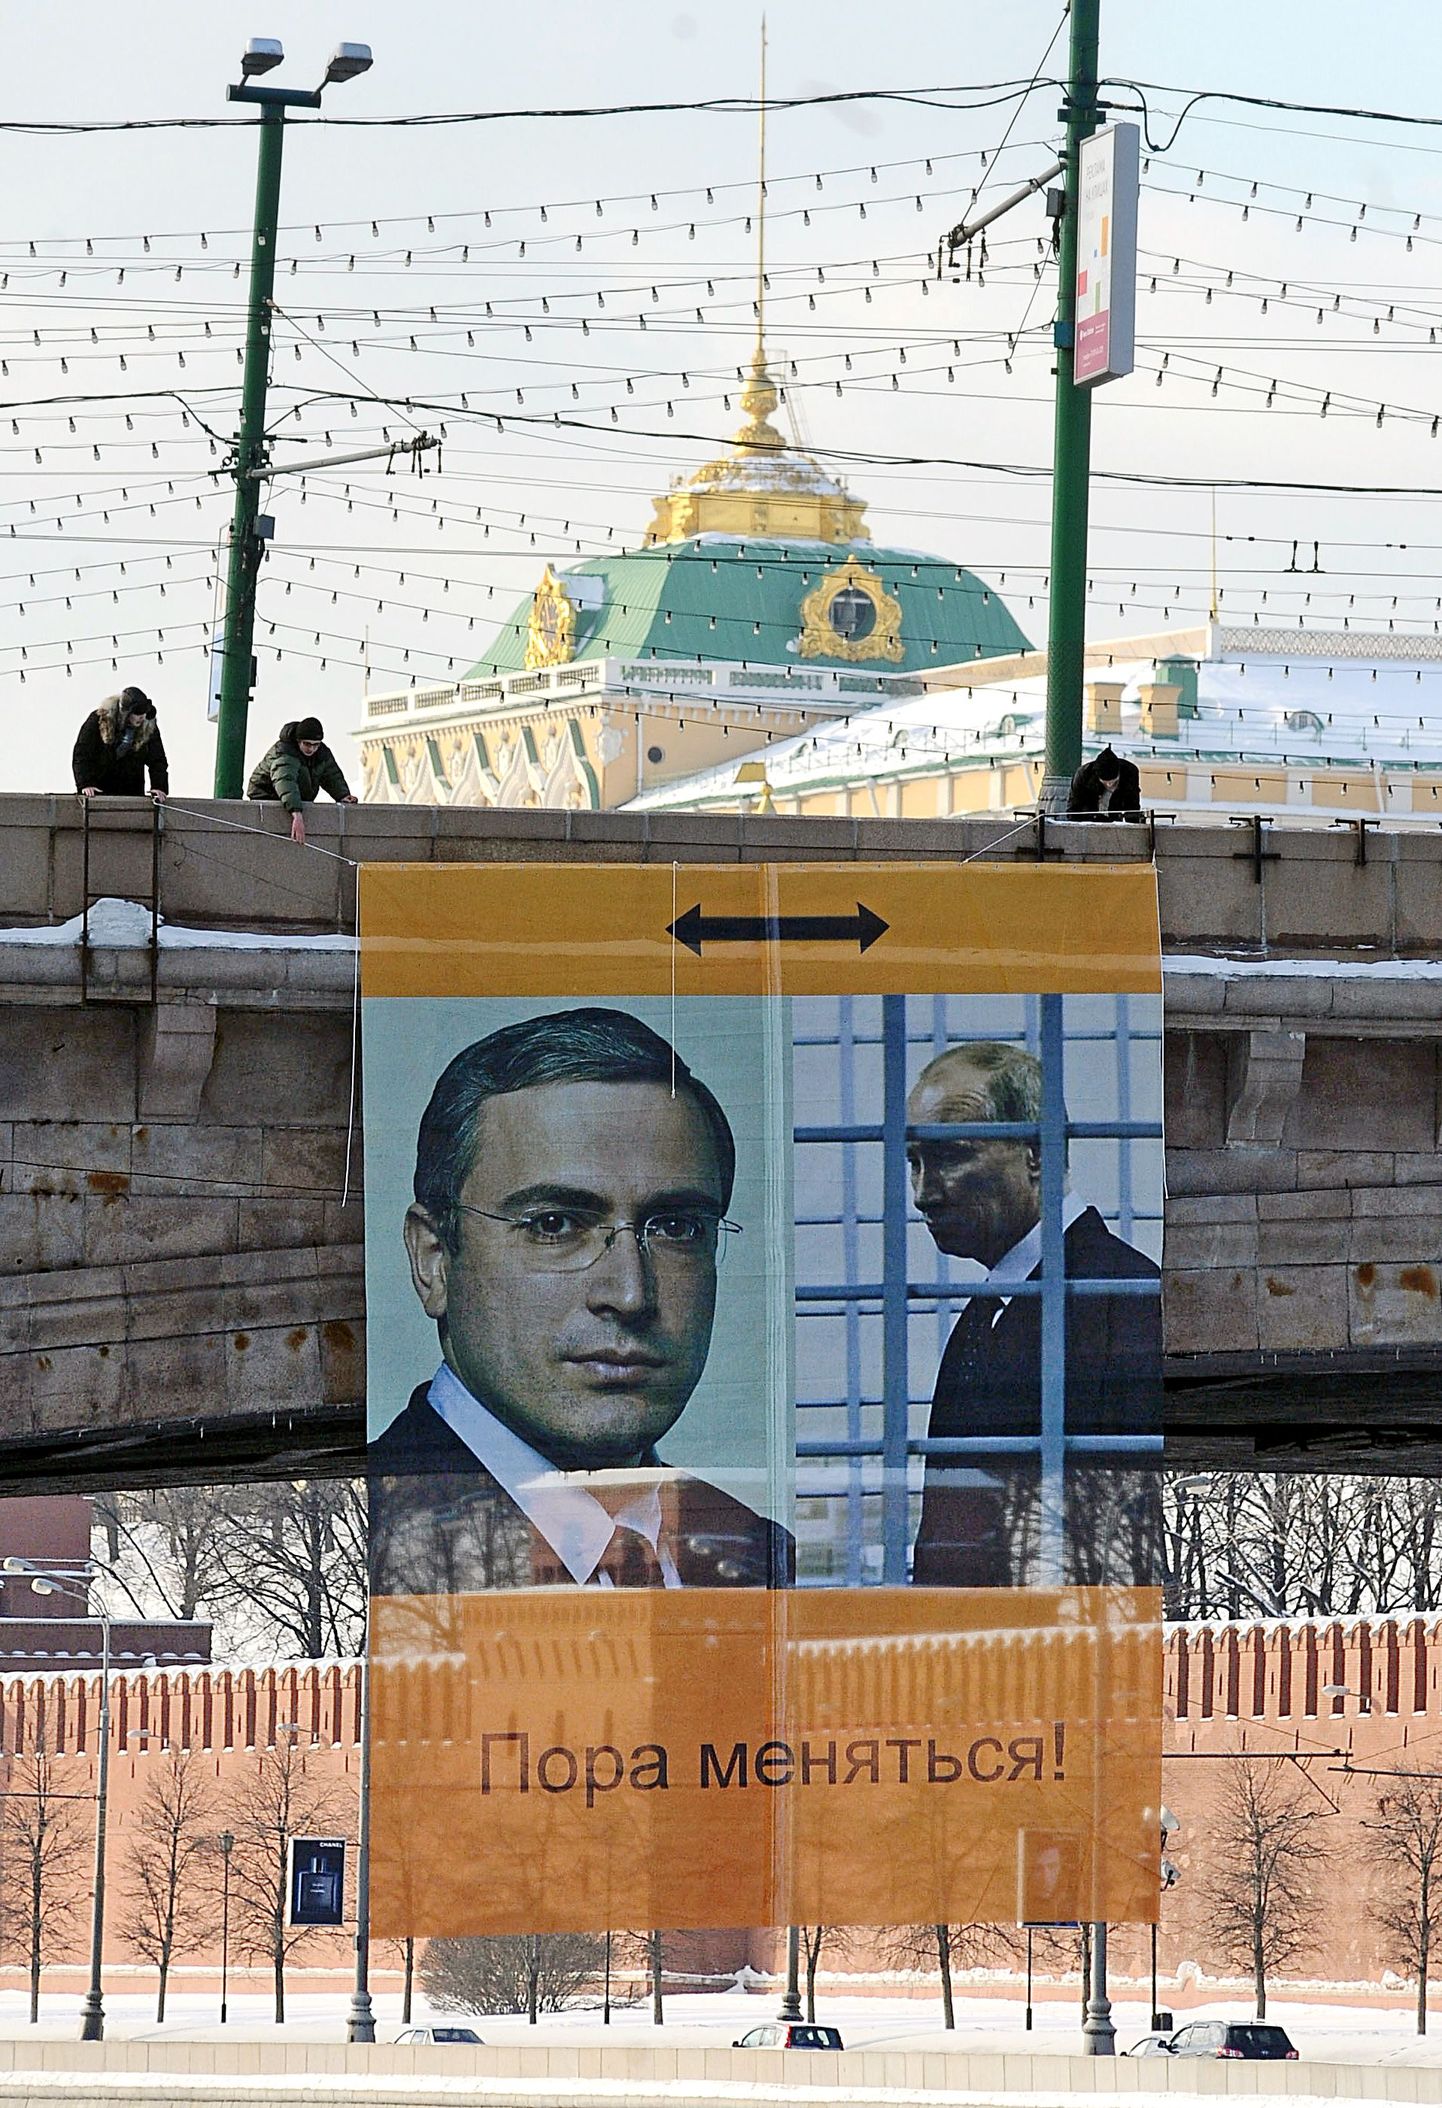 Moskvas Kremli lähedal riputasid opositsiooniaktivistid üles plakati, millel kujutasid vangis istuvat Mihhail Hodorkovskit vabana ning Venemaa peaministrit Vladimir Putinit vahistatuna.